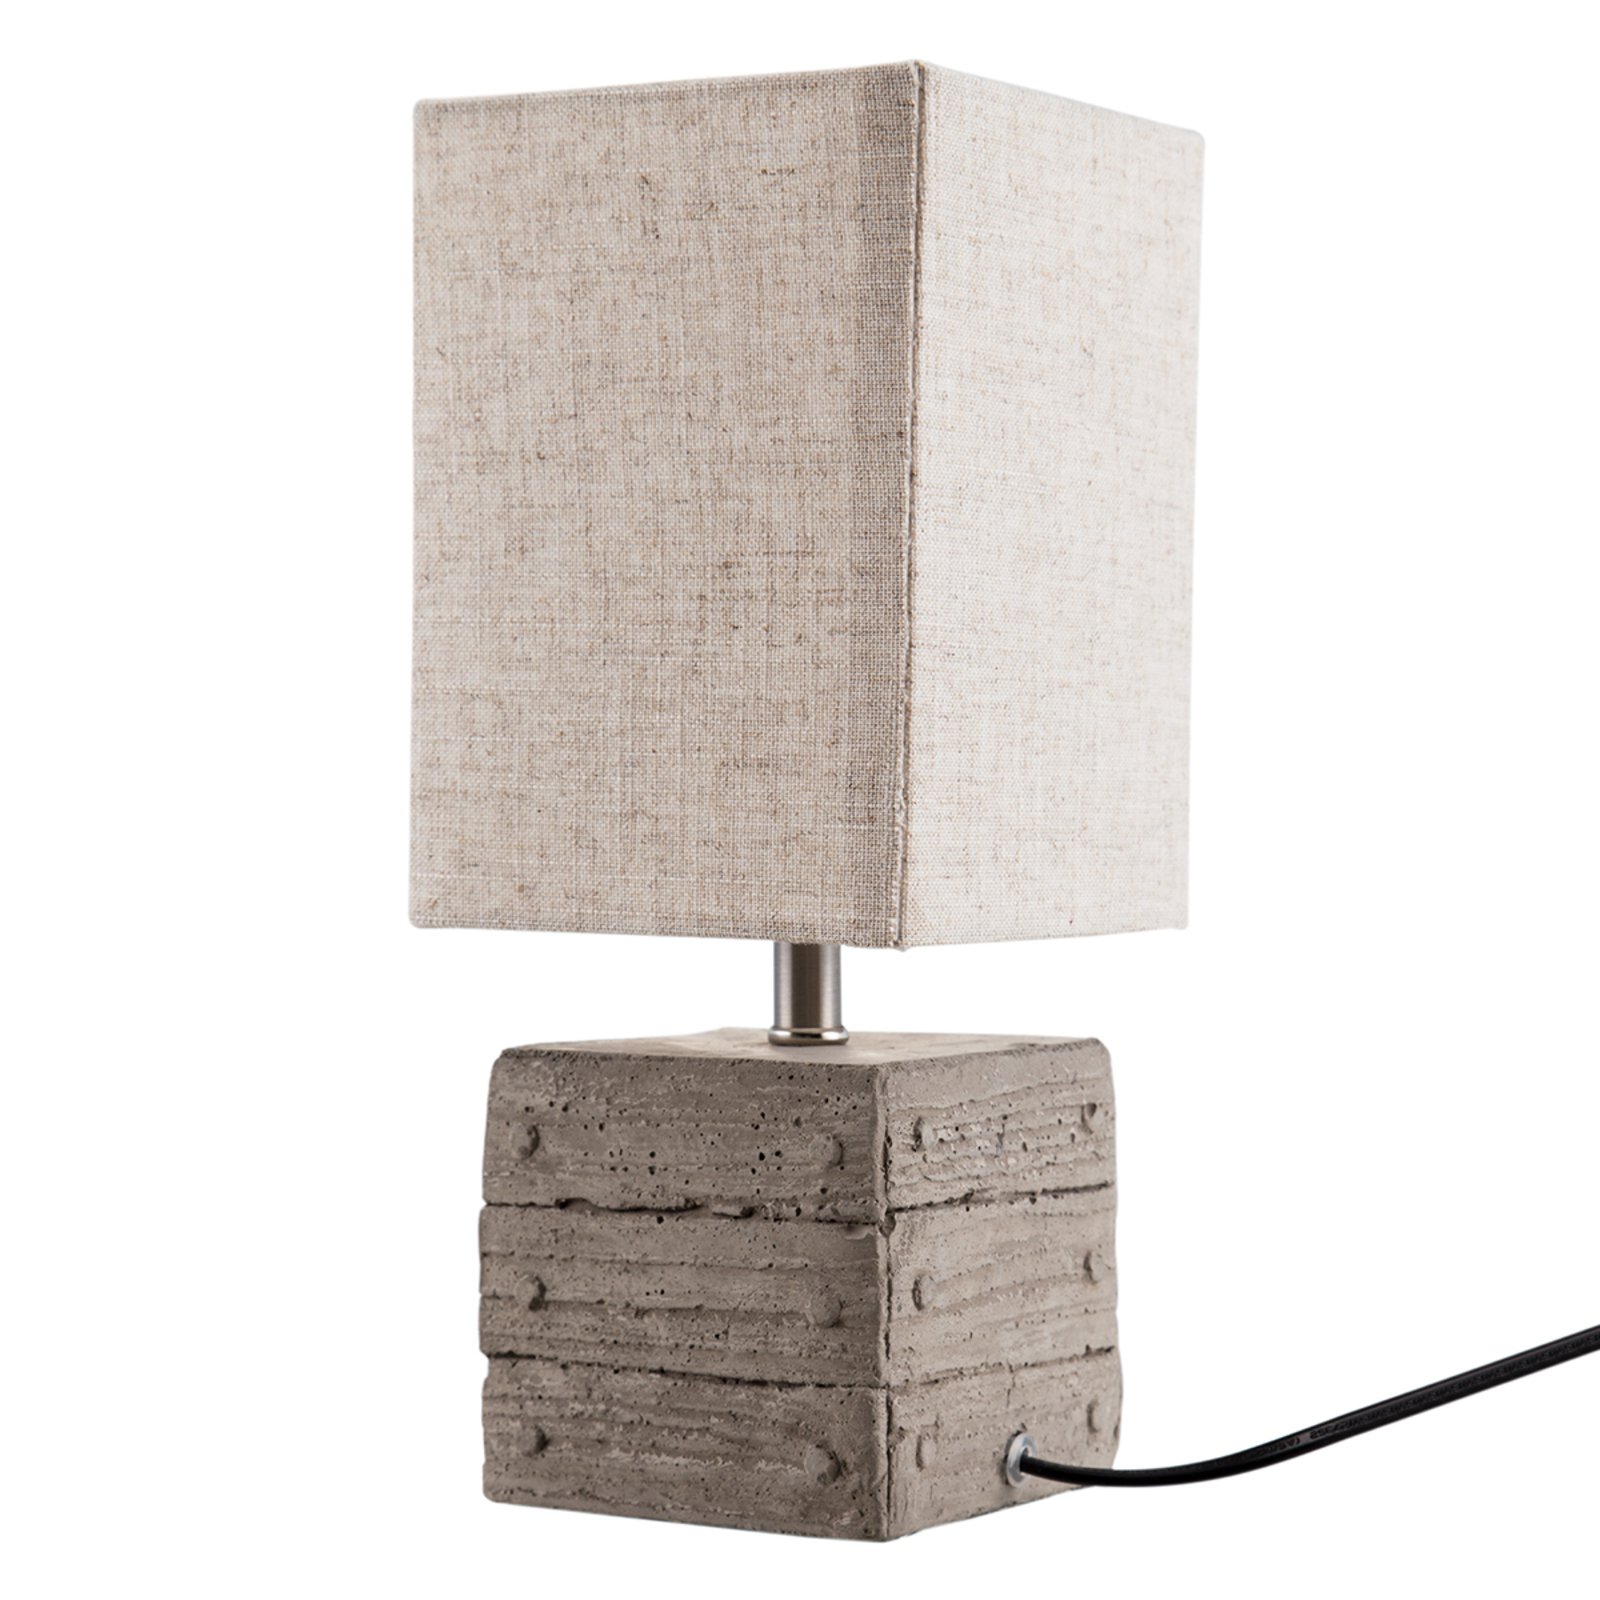 Lisco table lamp, box-shaped concrete base